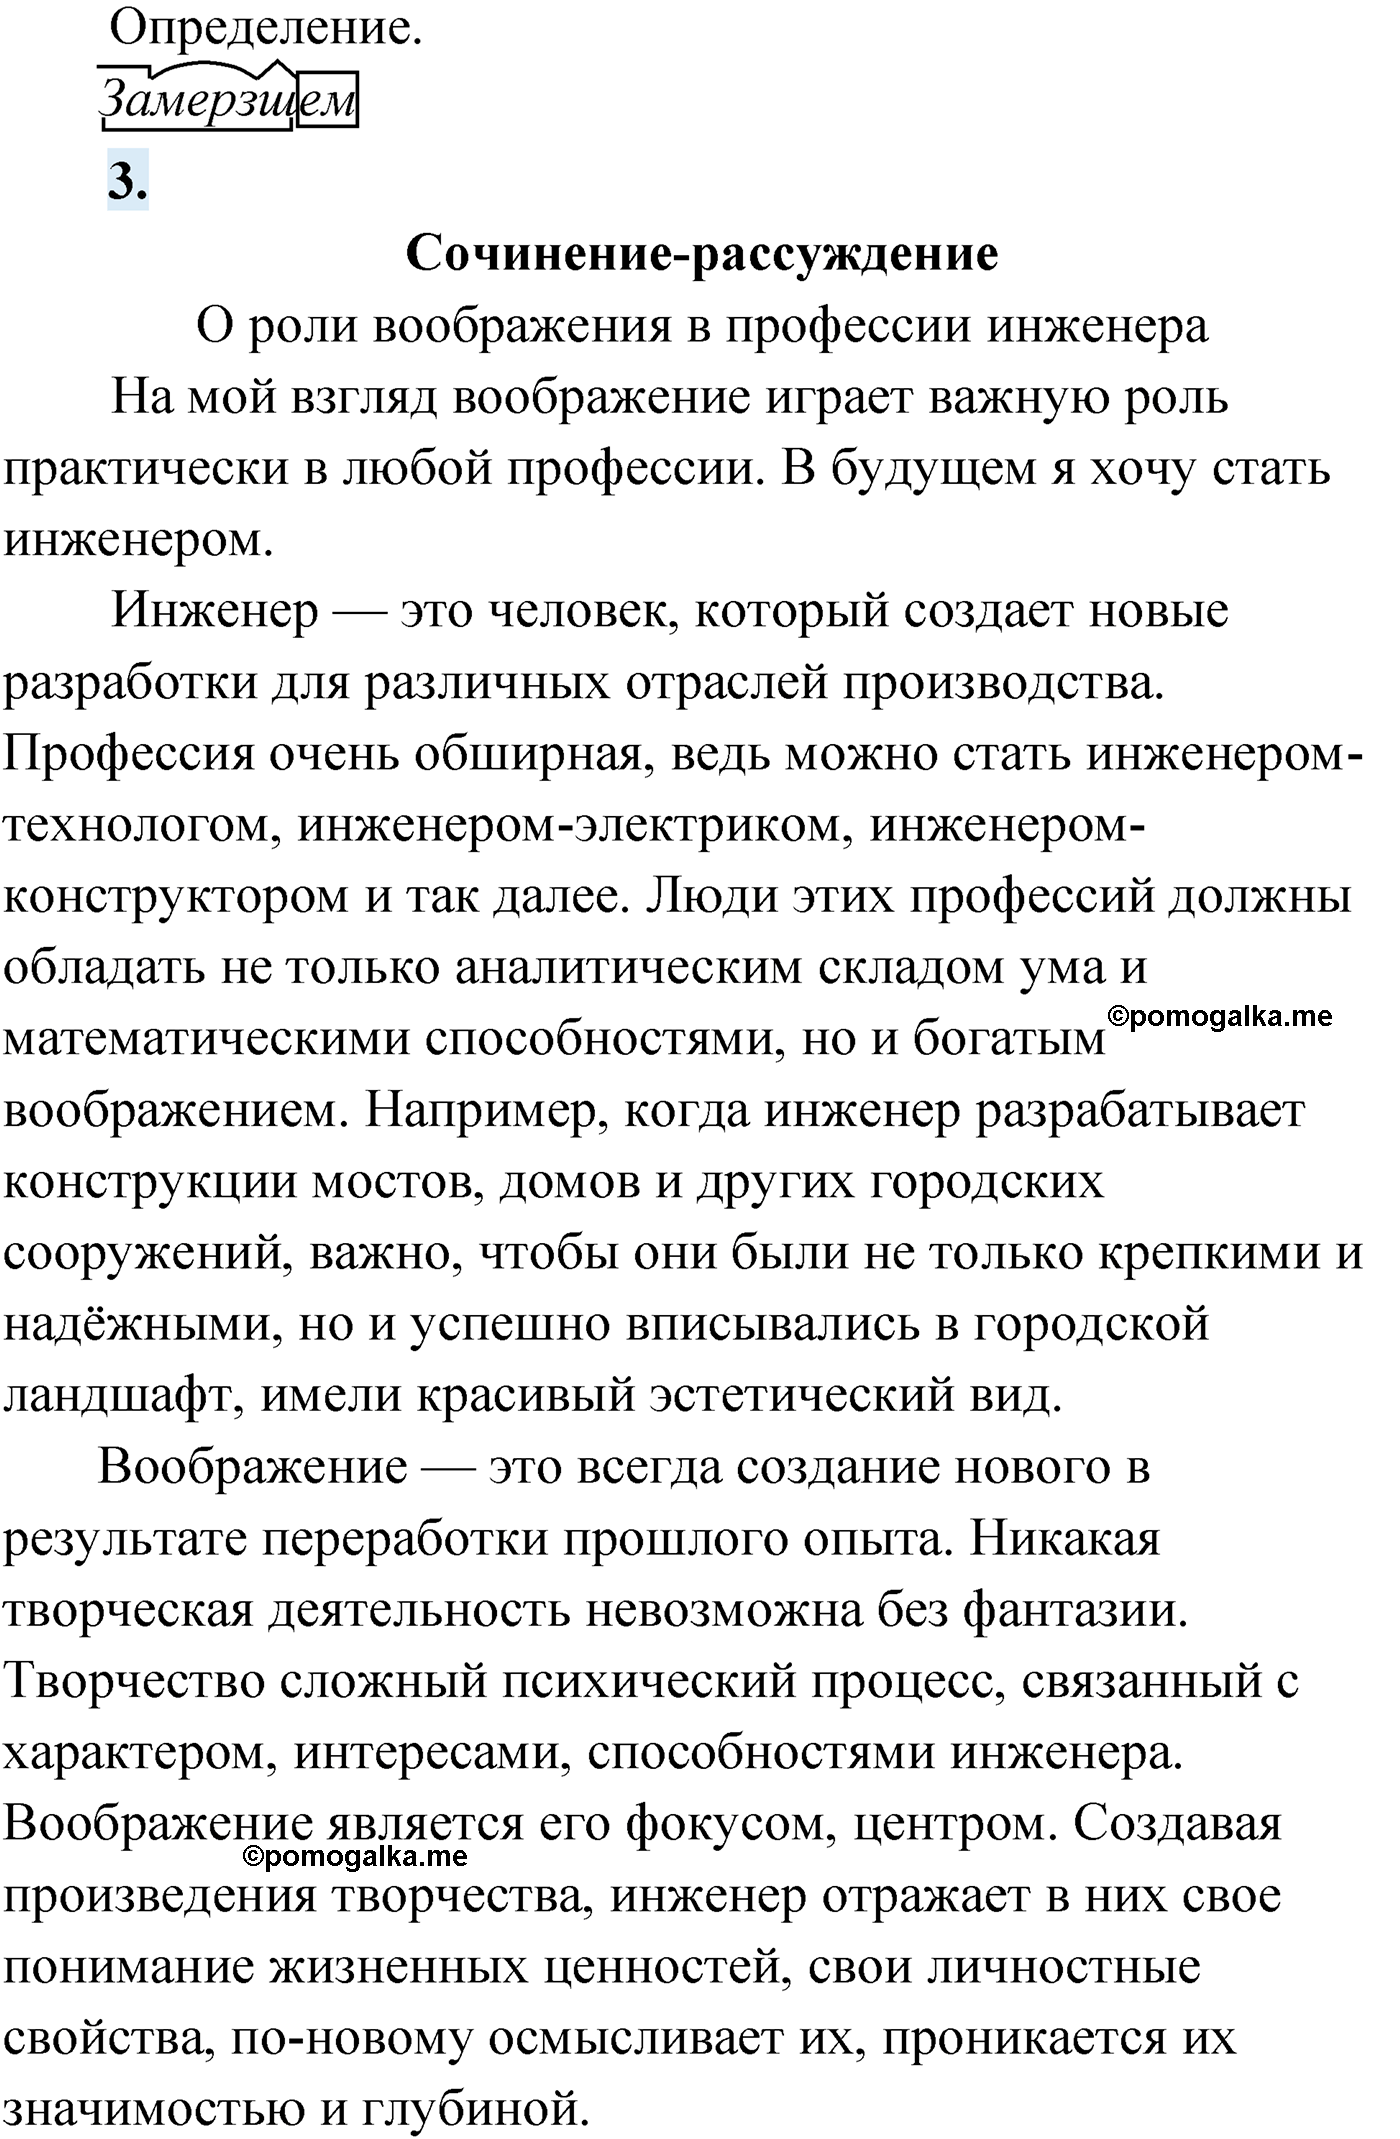 упражнение №63 русский язык 9 класс Мурина 2019 год